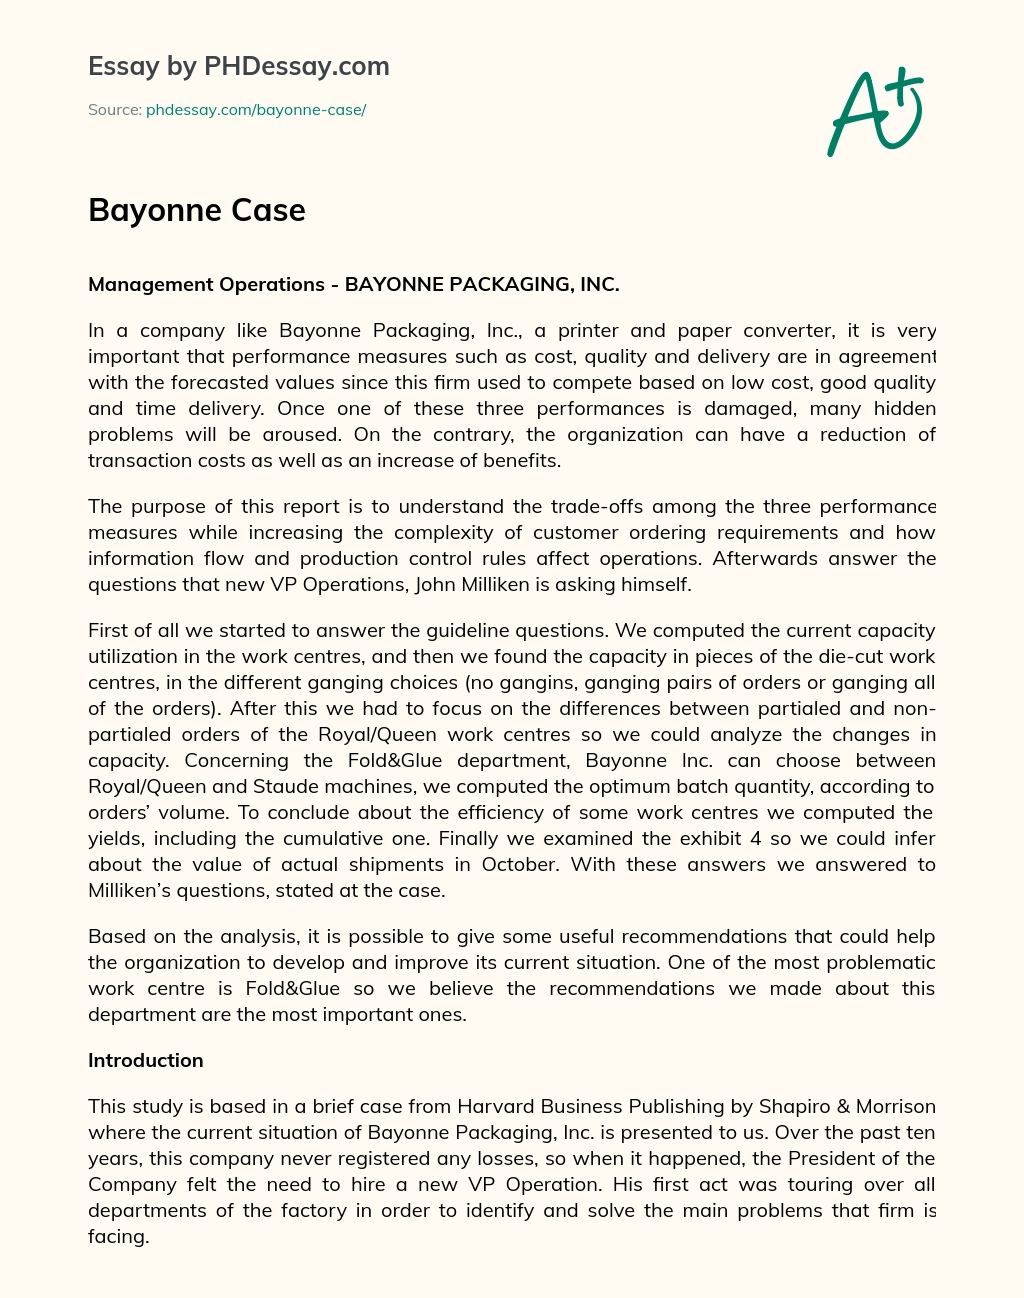 Bayonne Case essay